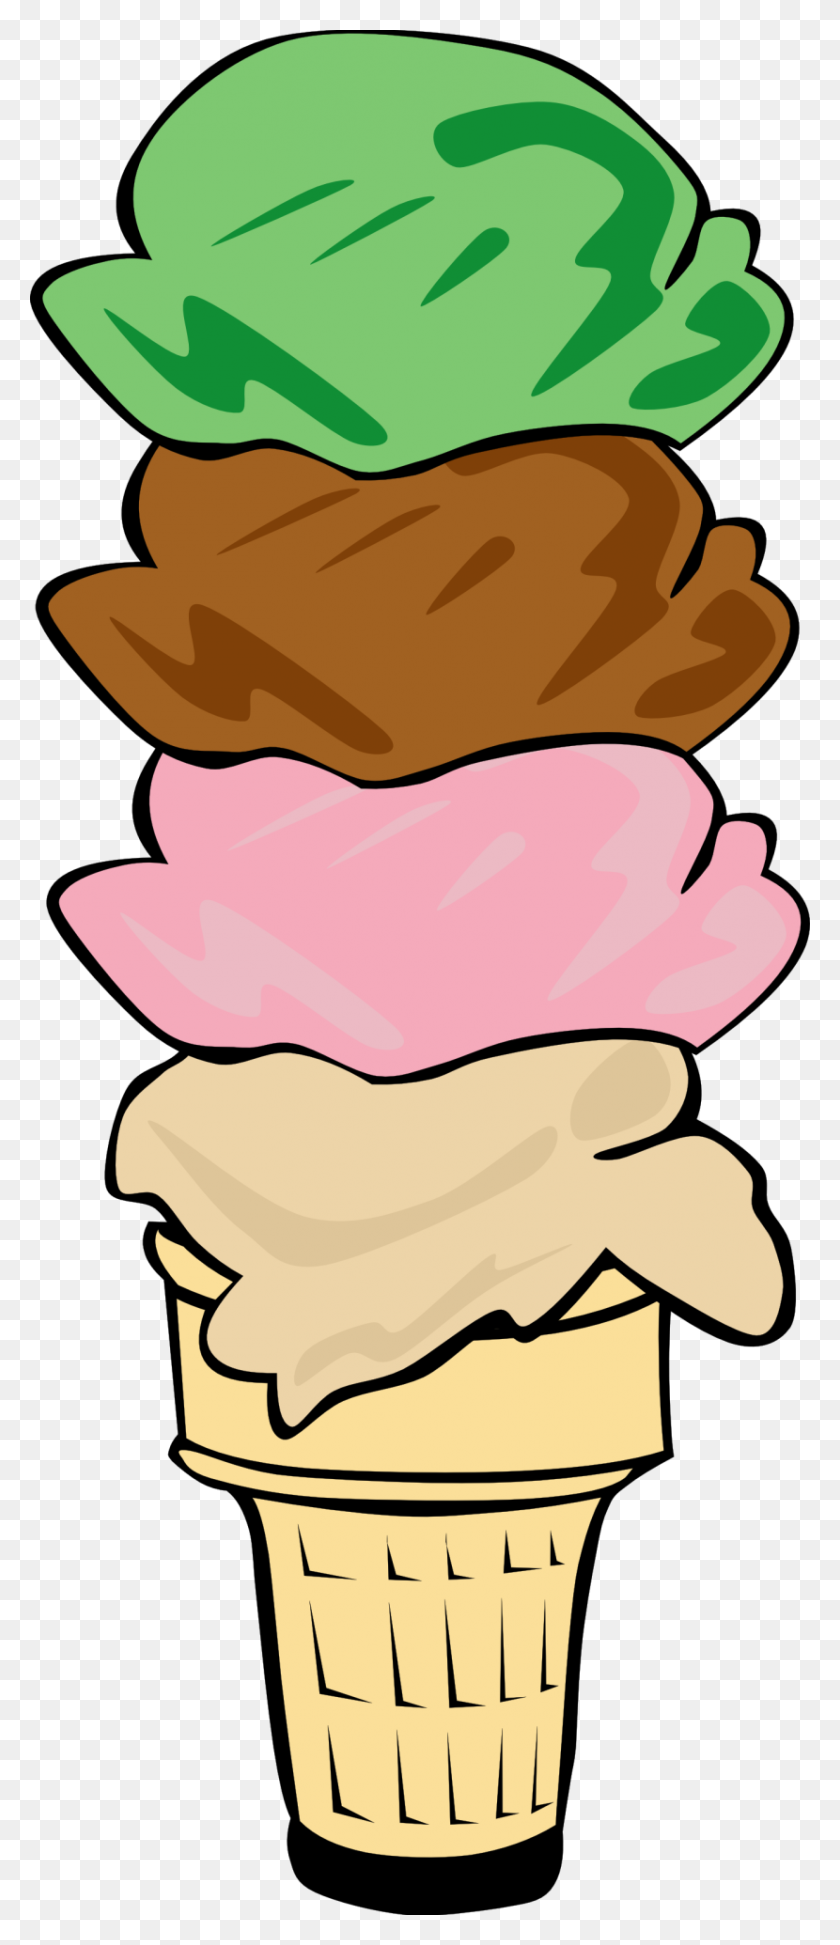 Cute Ice Cream Cone Clip Art